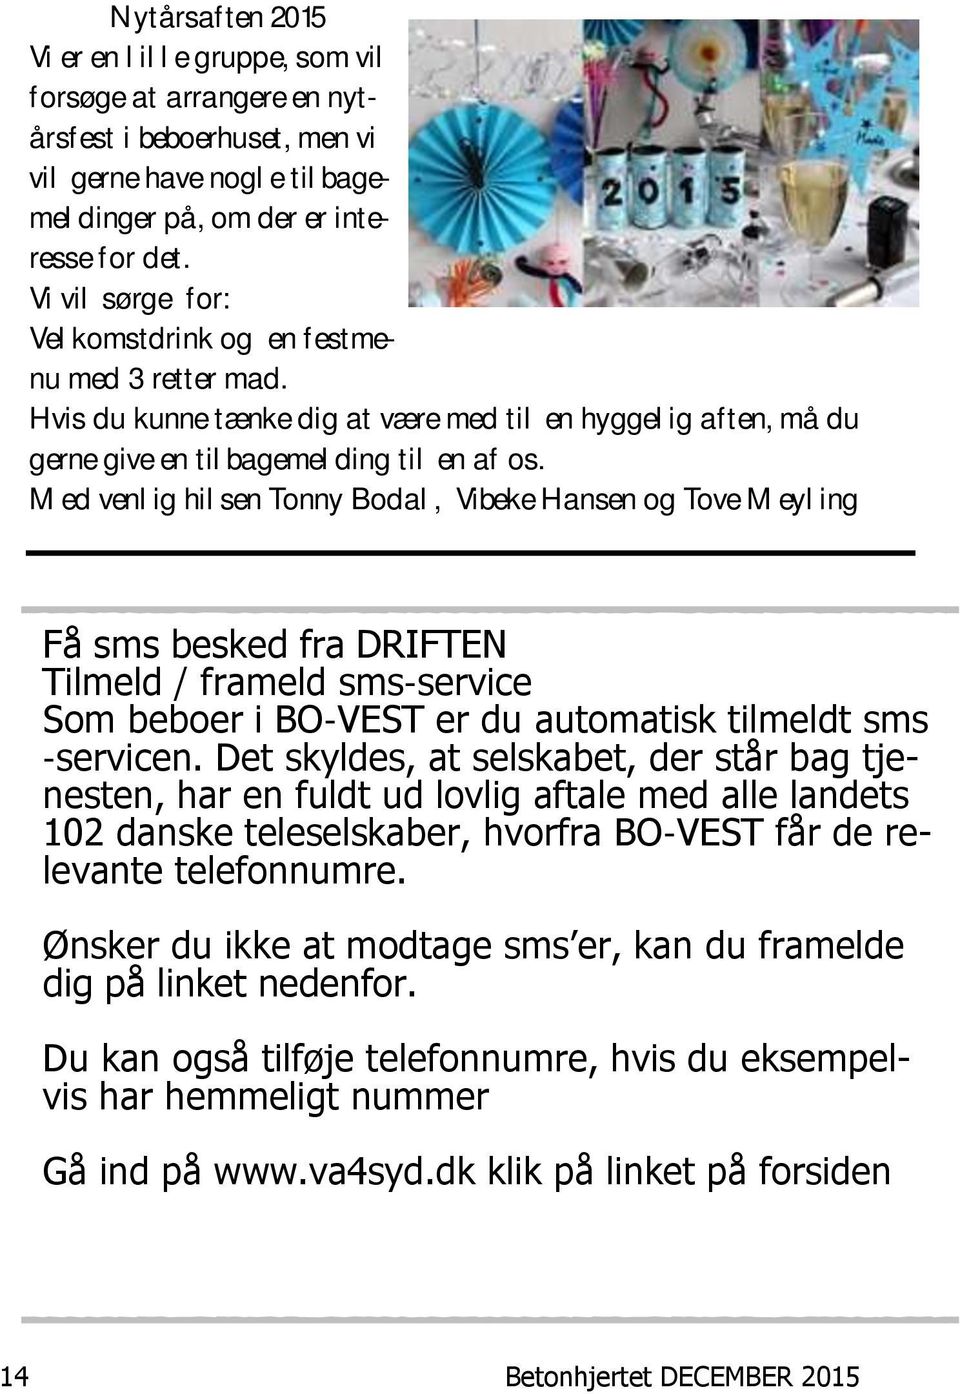 Med venlig hilsen Tonny Bodal, Vibeke Hansen og Tove Meyling Få sms besked fra DRIFTEN Tilmeld / frameld sms-service Som beboer i BO-VEST er du automatisk tilmeldt sms -servicen.